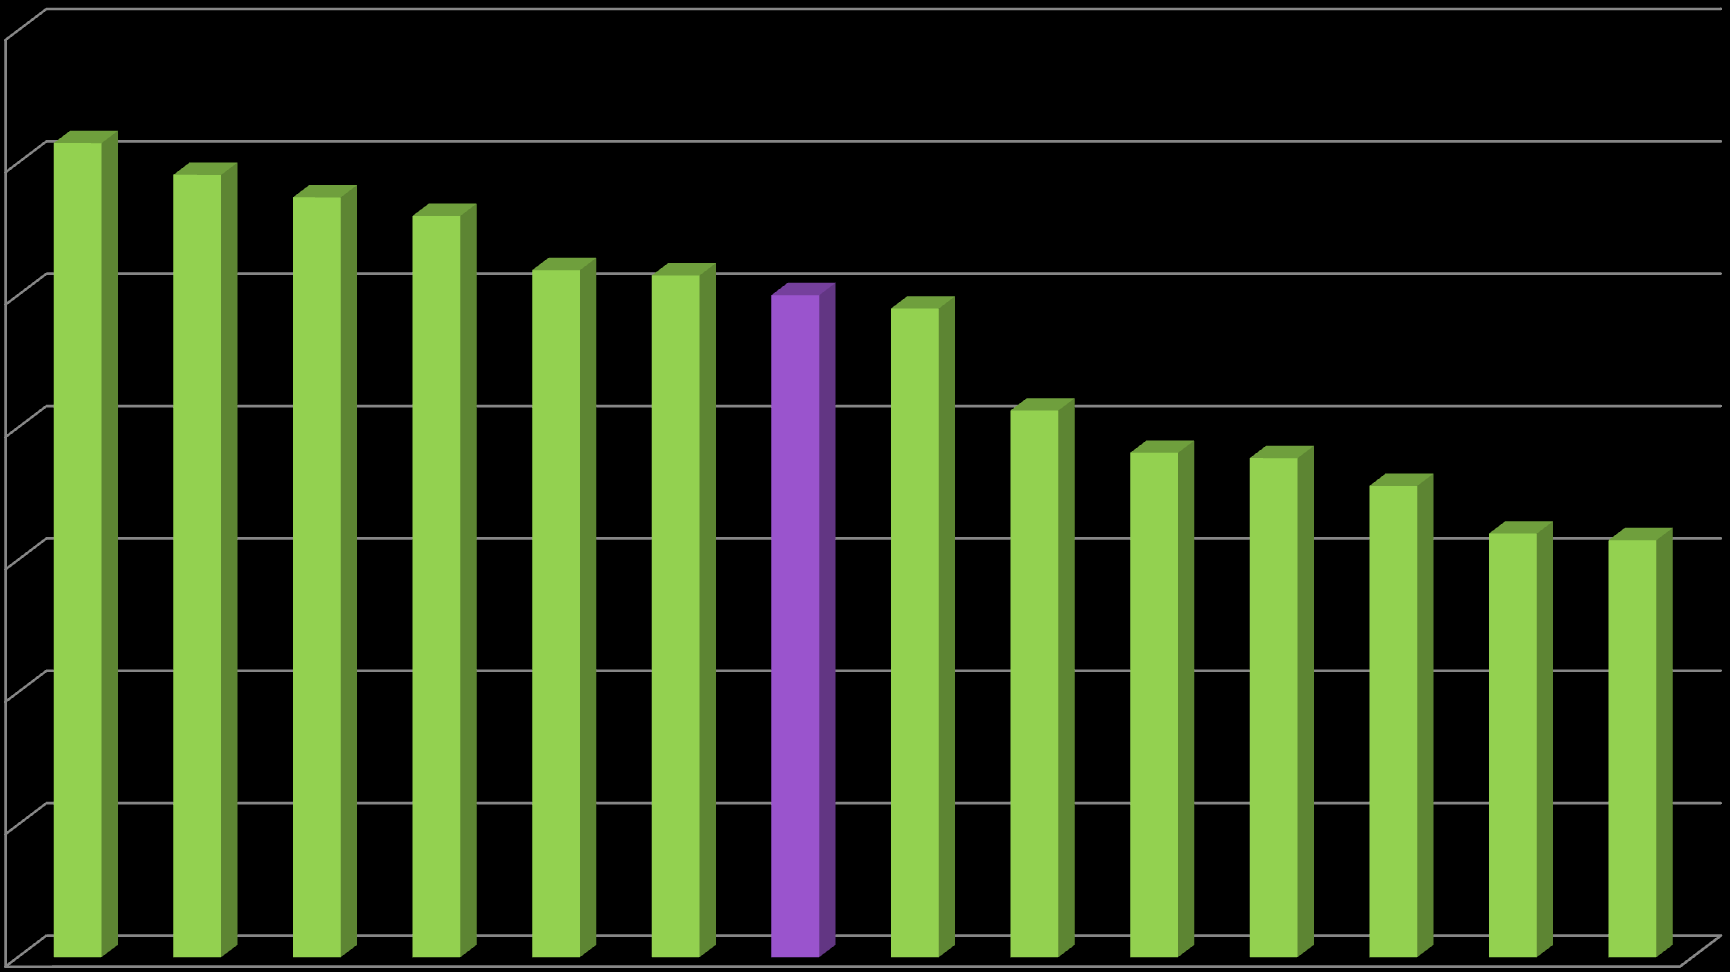 Porcentaje de Usuarios de Internet En Chihuahua más del 50% usa Internet 70 60 50 61.5 59.1 57.4 Porcentaje de Usuarios de Internet por Entidad Federativa (INEGI, 2014) 56 51.9 51.5 50.1 49 41.